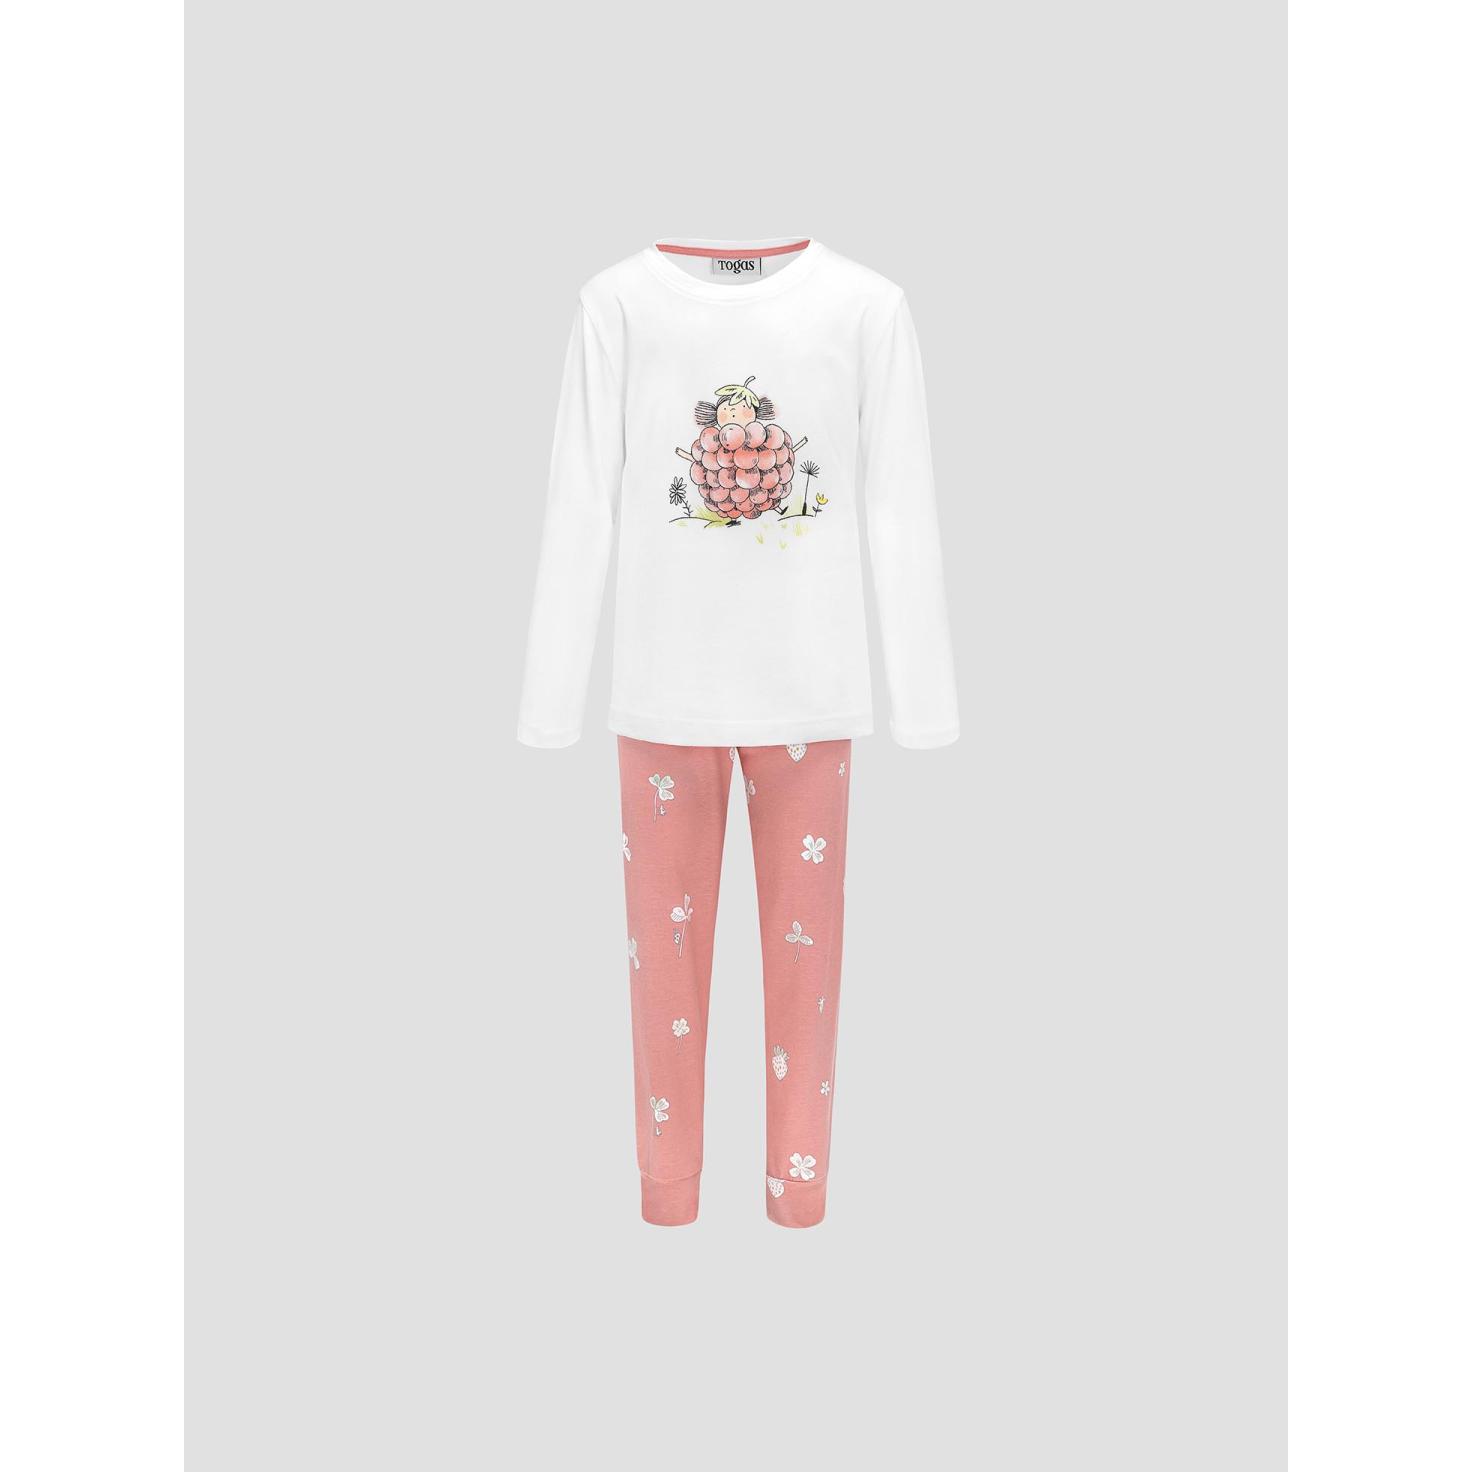 Пижама для девочек Kids by togas Стробби бело-розовый 104-110 см жен пижама клубничный зайка розовый р 40